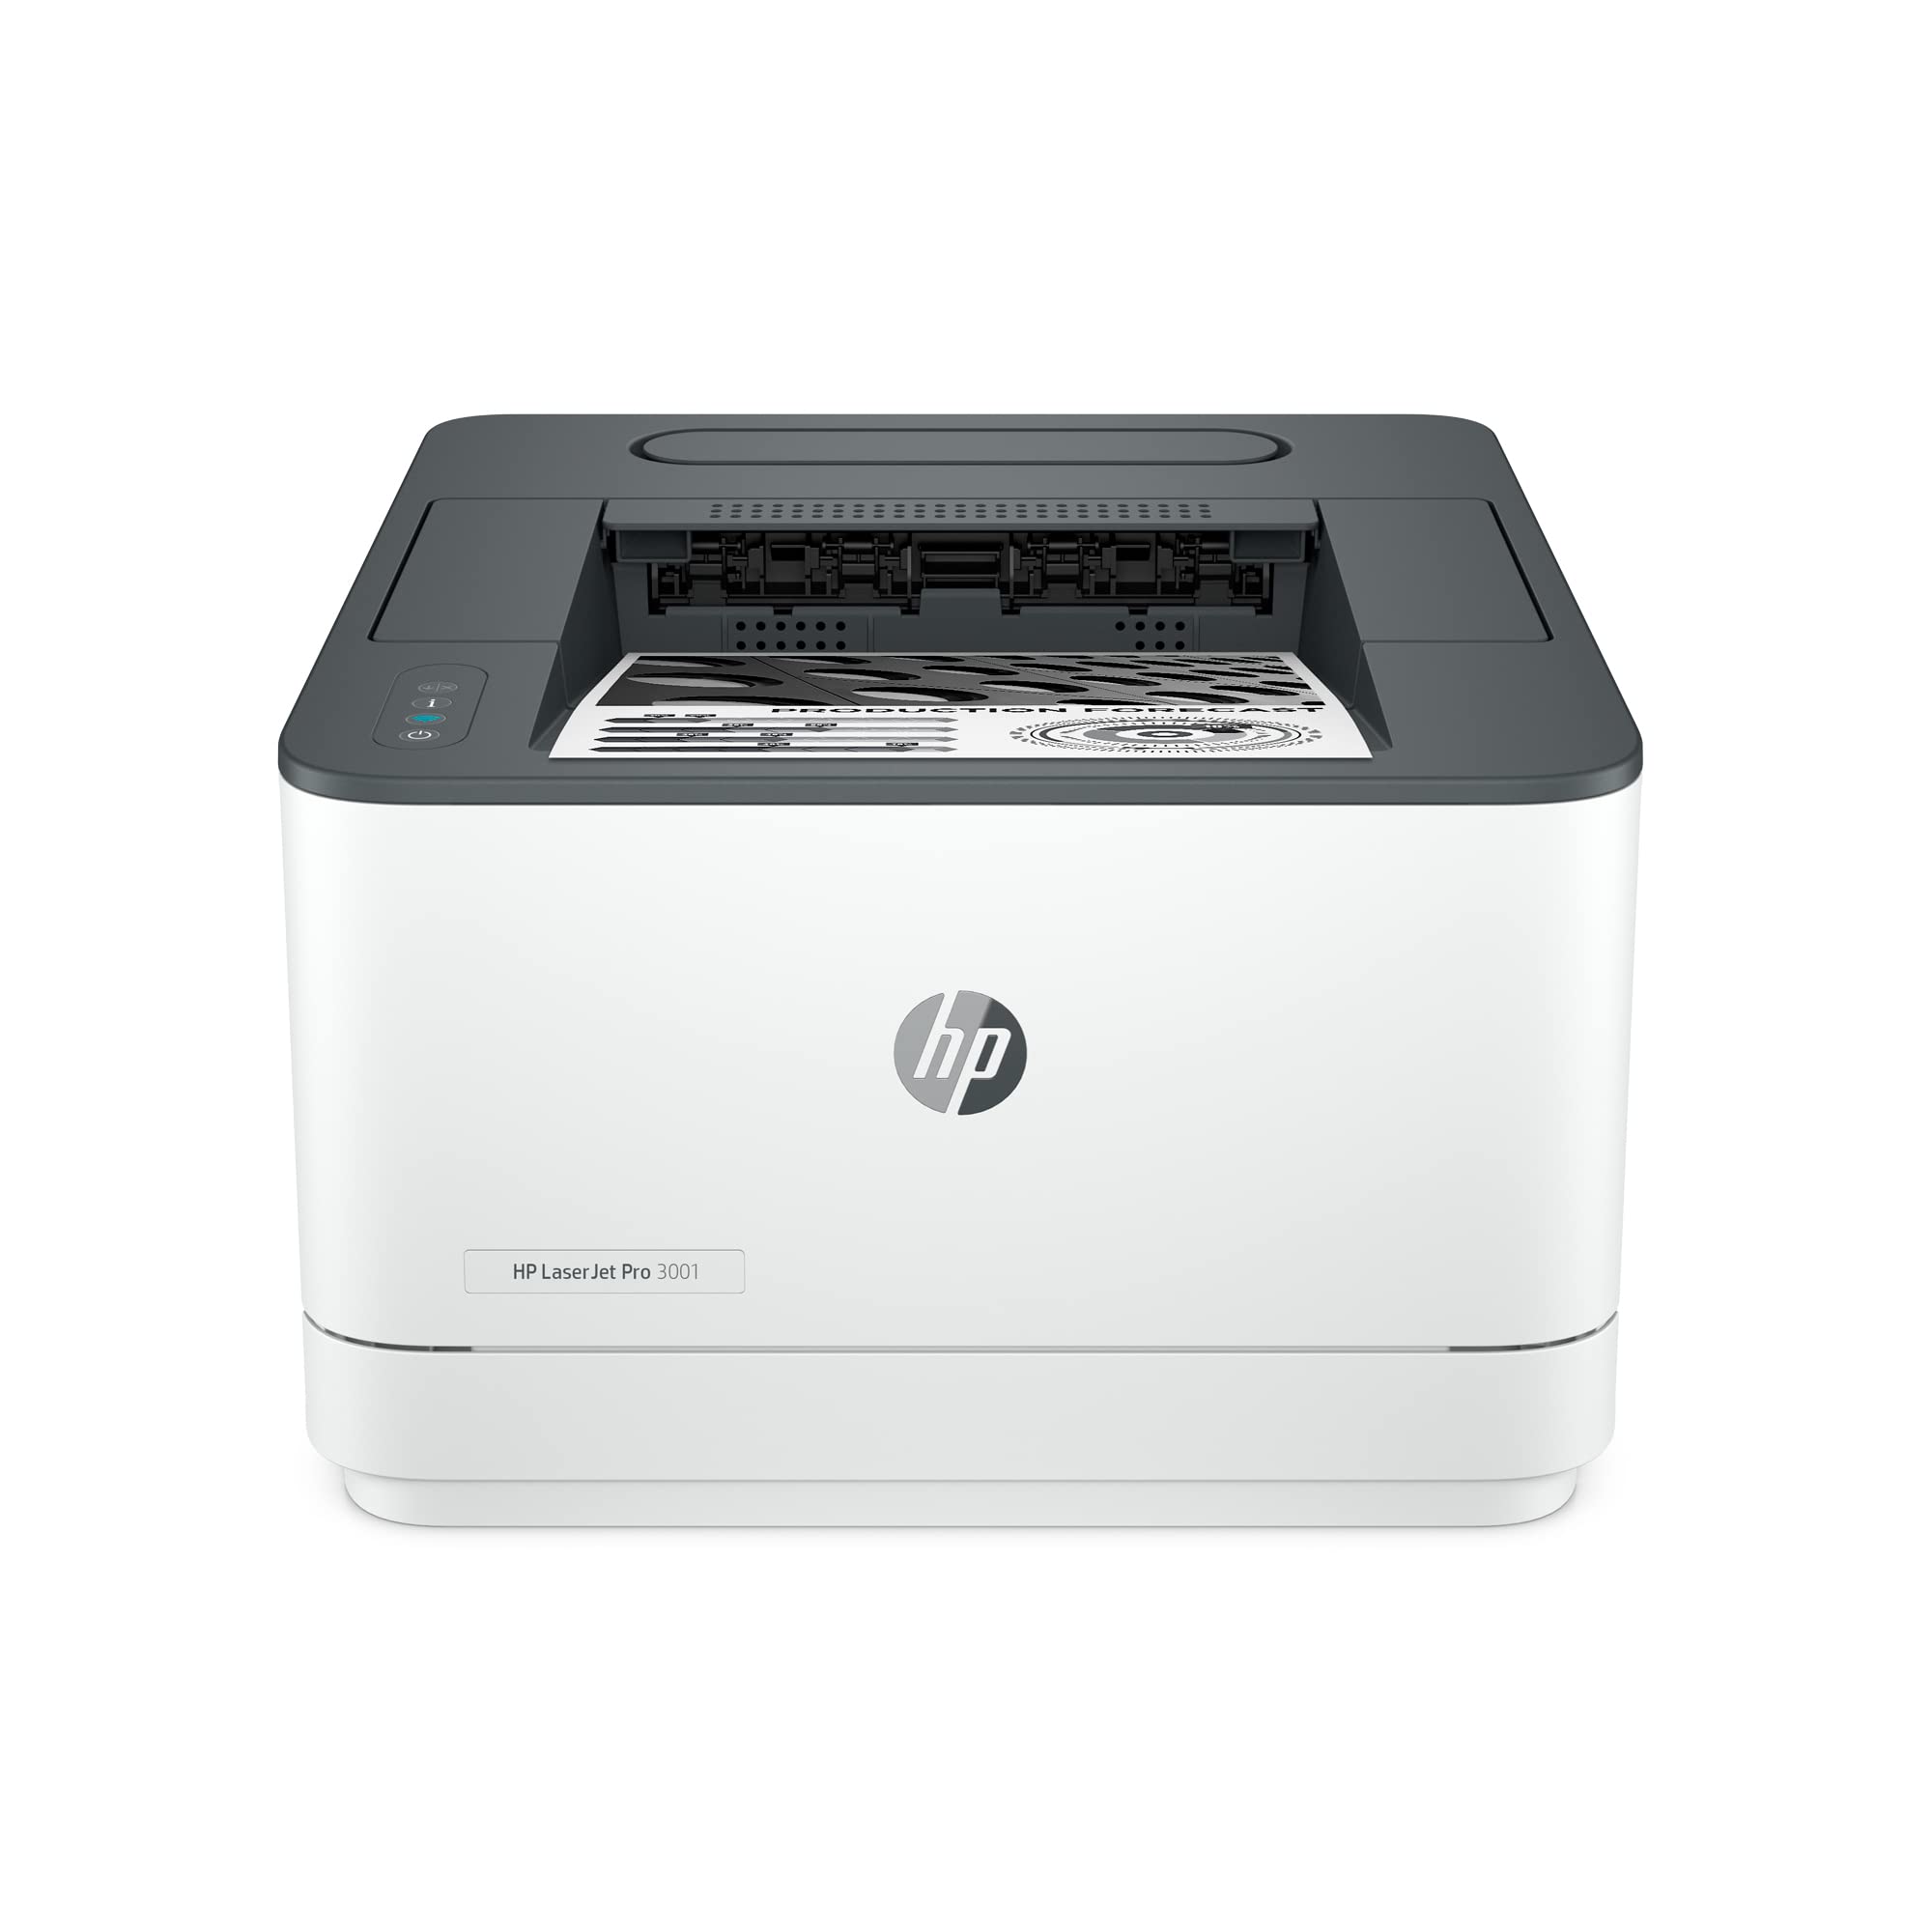 HP LaserJet Pro 3001dw 无线黑白打印机